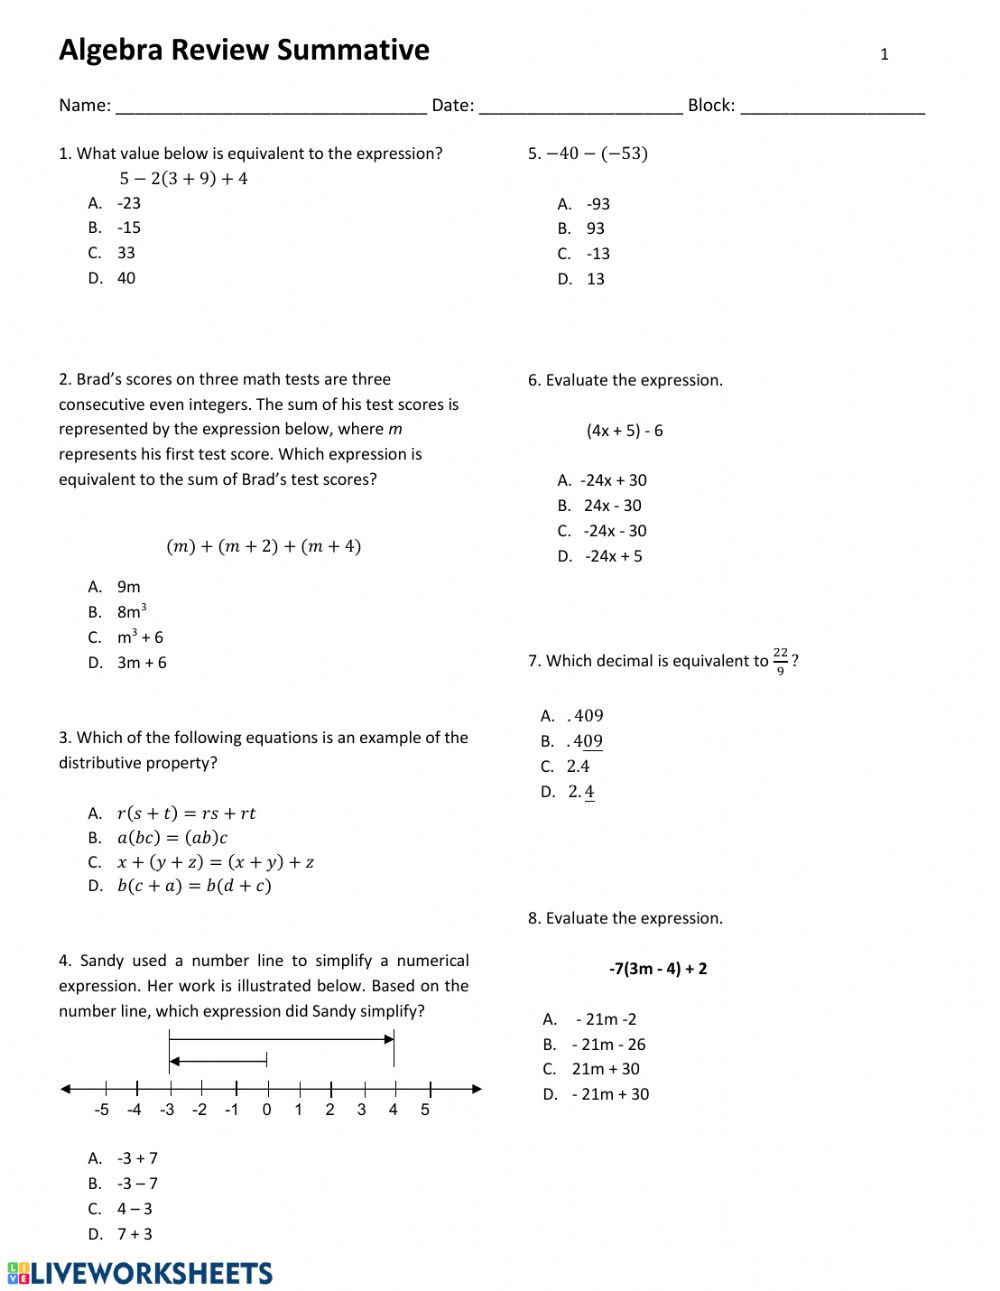 Algebra 1 Review Worksheet Algebra Review Interactive Worksheet